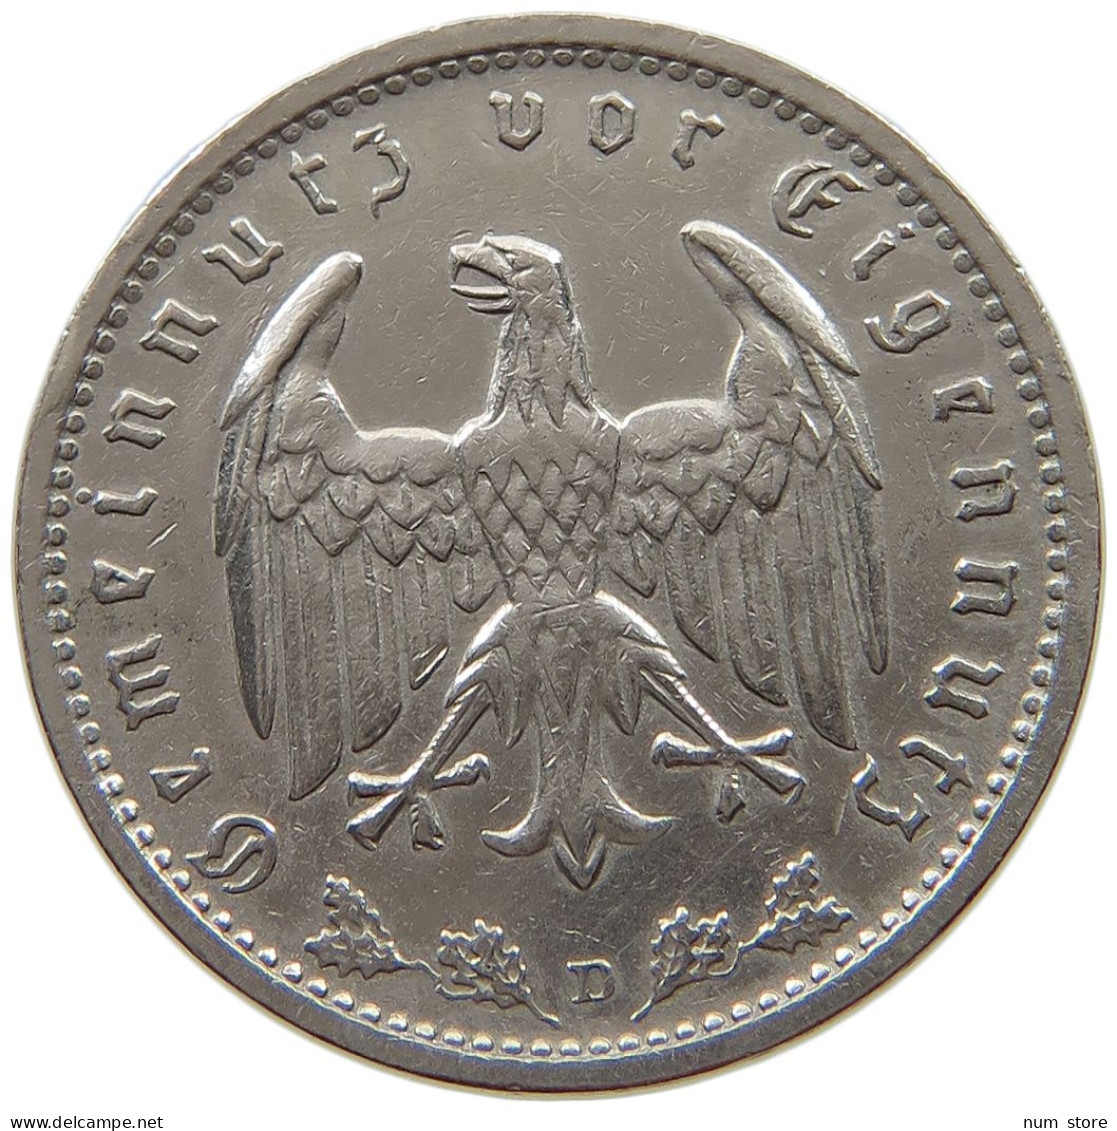 DRITTES REICH MARK 1934 D J.354 #a015 0853 - 1 Reichsmark